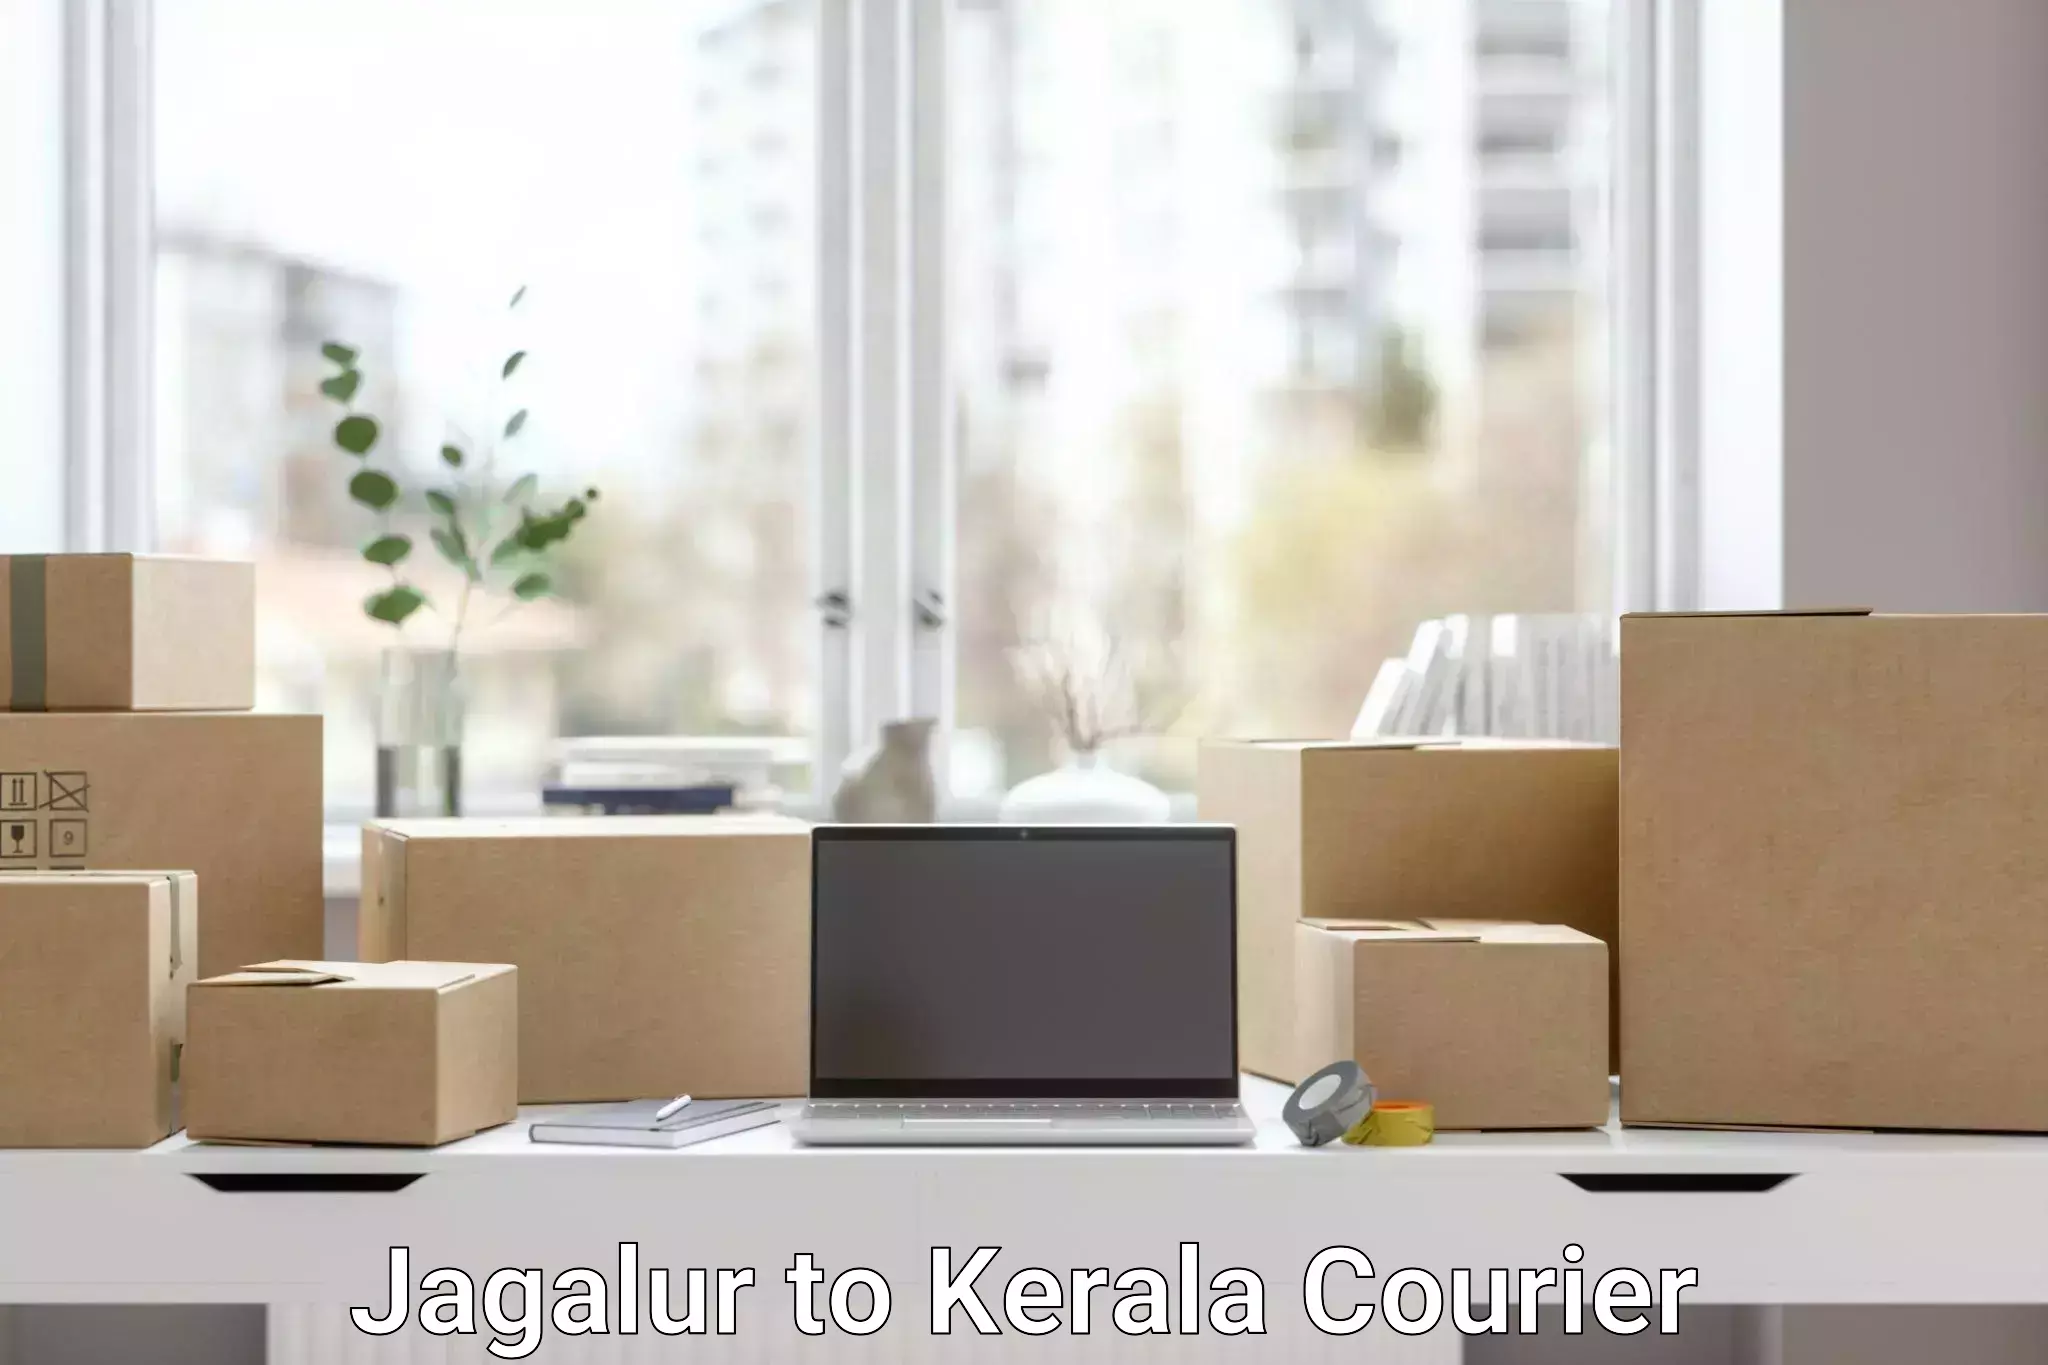 Flexible parcel services Jagalur to Kerala